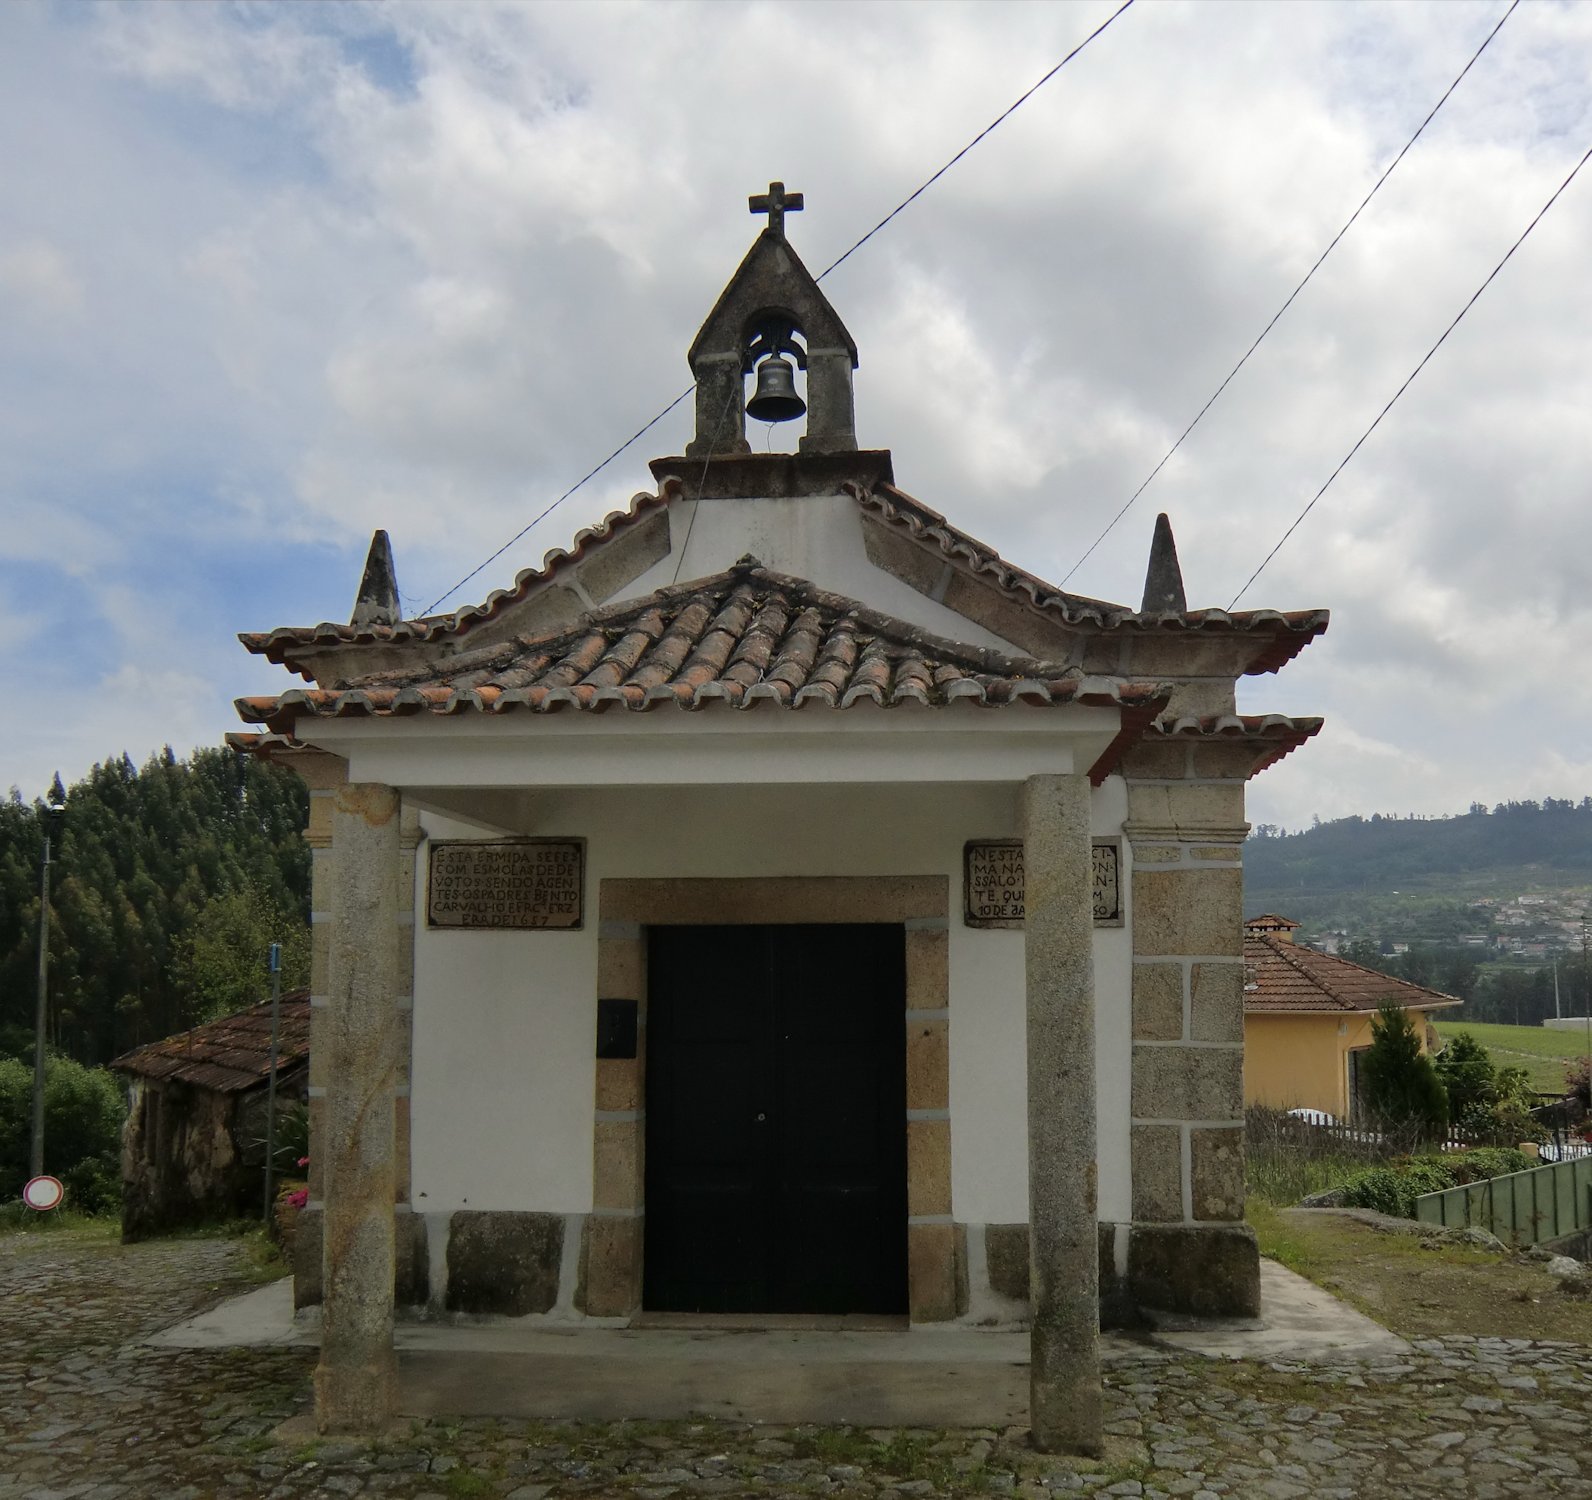 Kapelle an der Stelle des Hauses in Tagilde, wo Gundisalvus geboren wurde